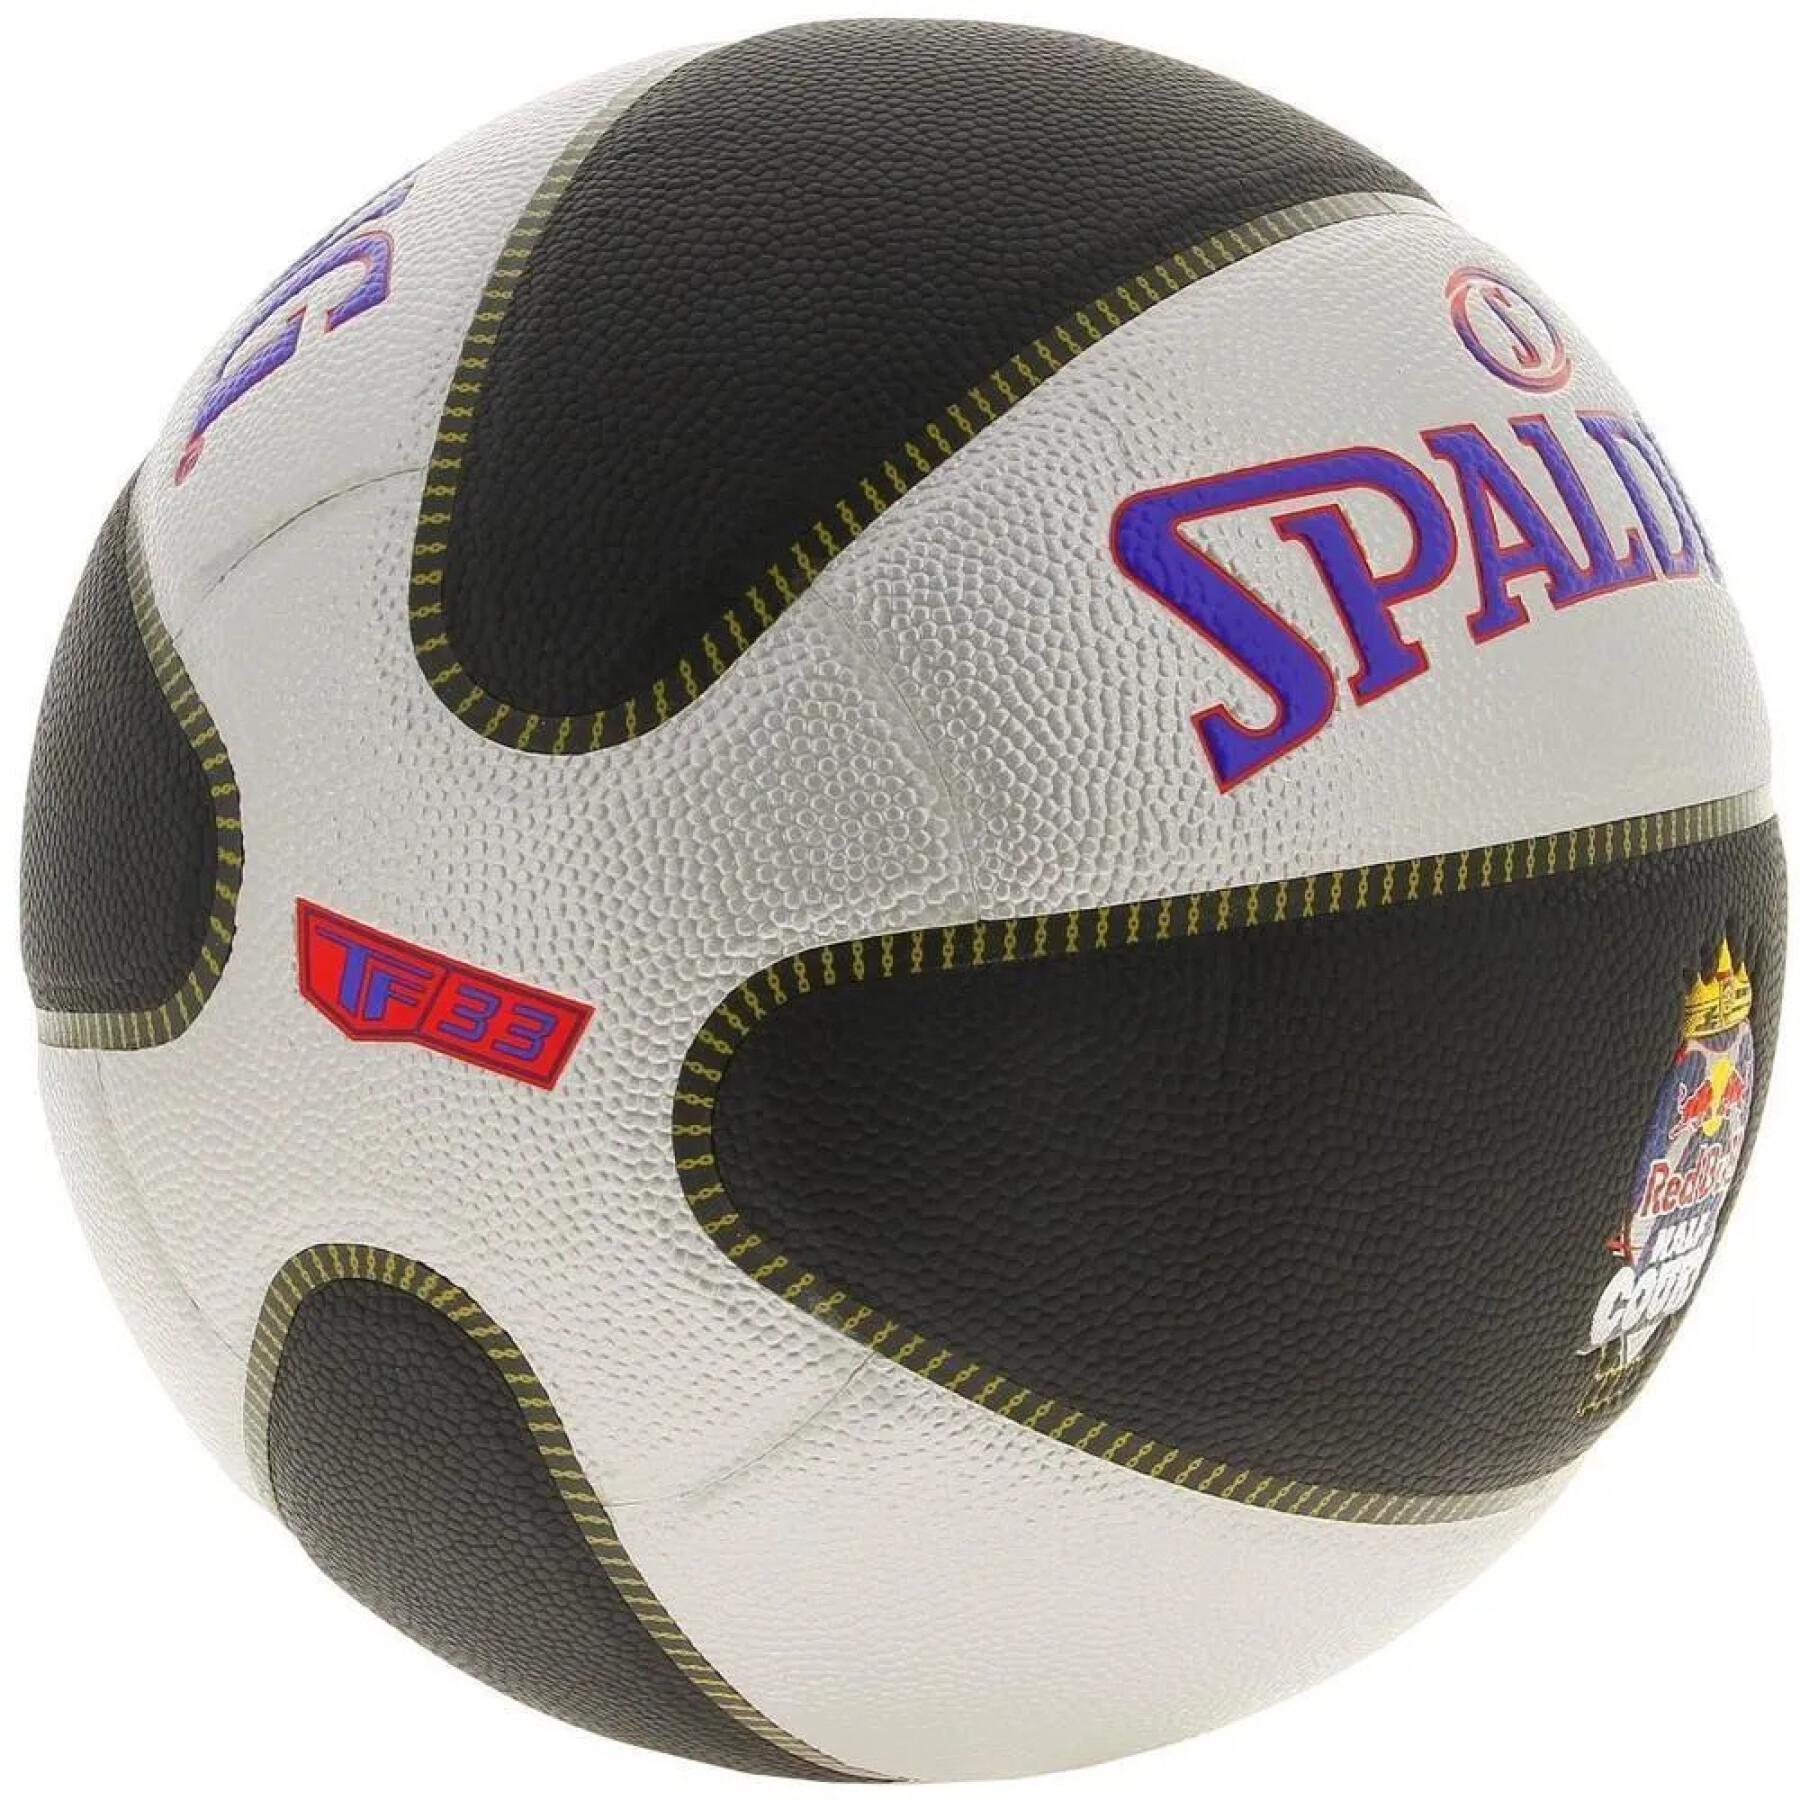 Ballon Spalding TF-33 Redbull Half Court 2021 Composite